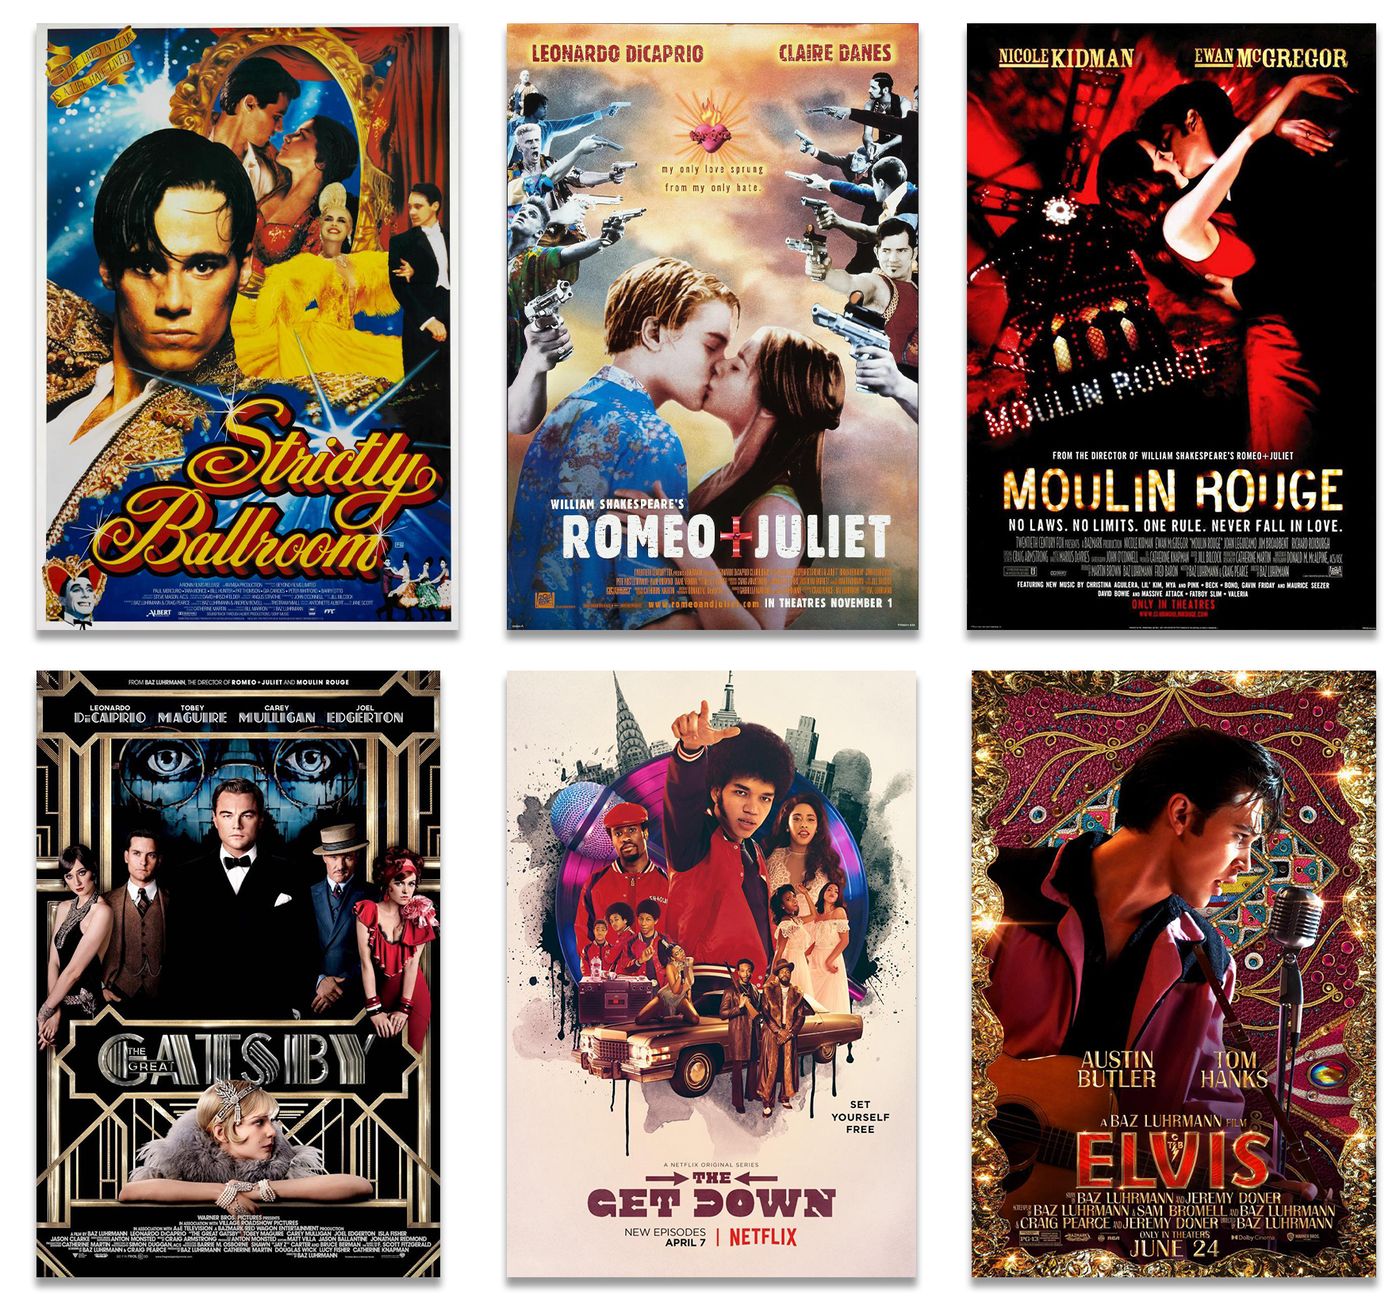  “El amor está en el aire” (1992), “Romeo + Julieta” (1996), “Moulin Rouge” (2001), “El gran Gatsby” (2013), “The Get Down” (2016) y “Elvis” (2022).